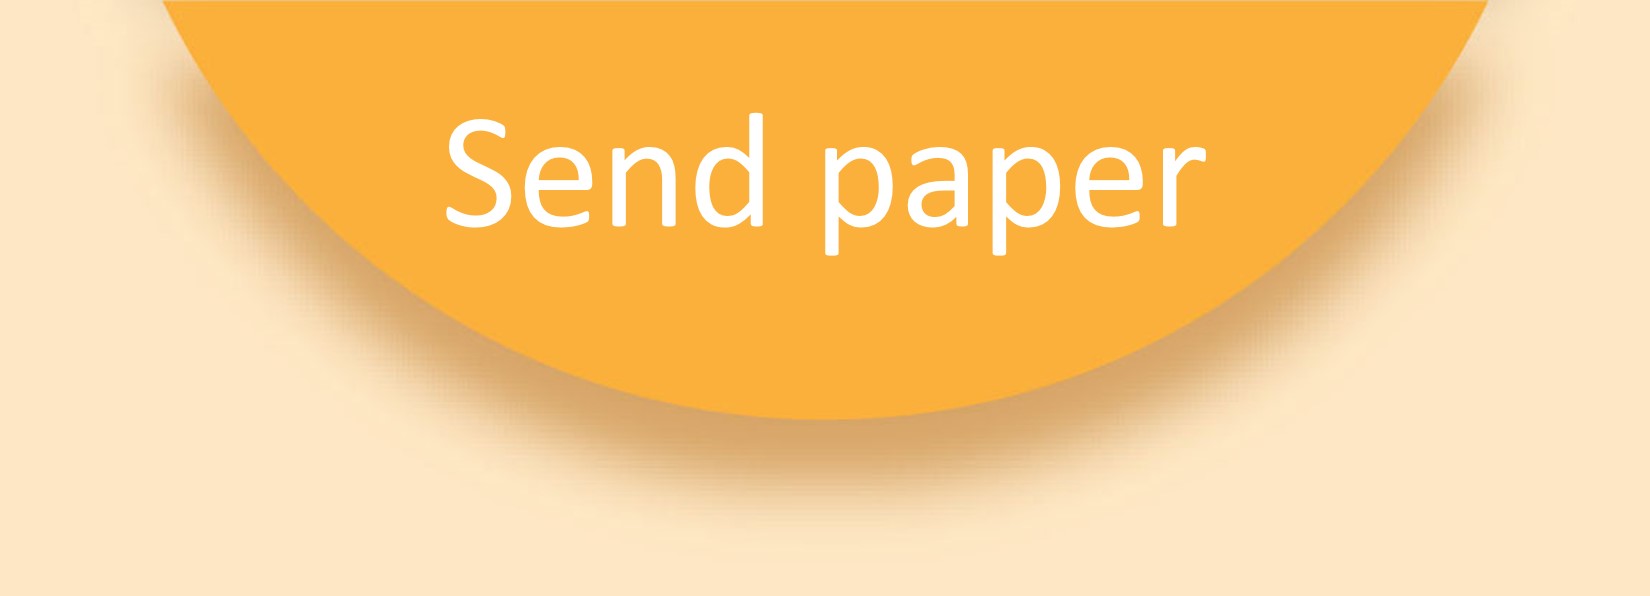 Send paper